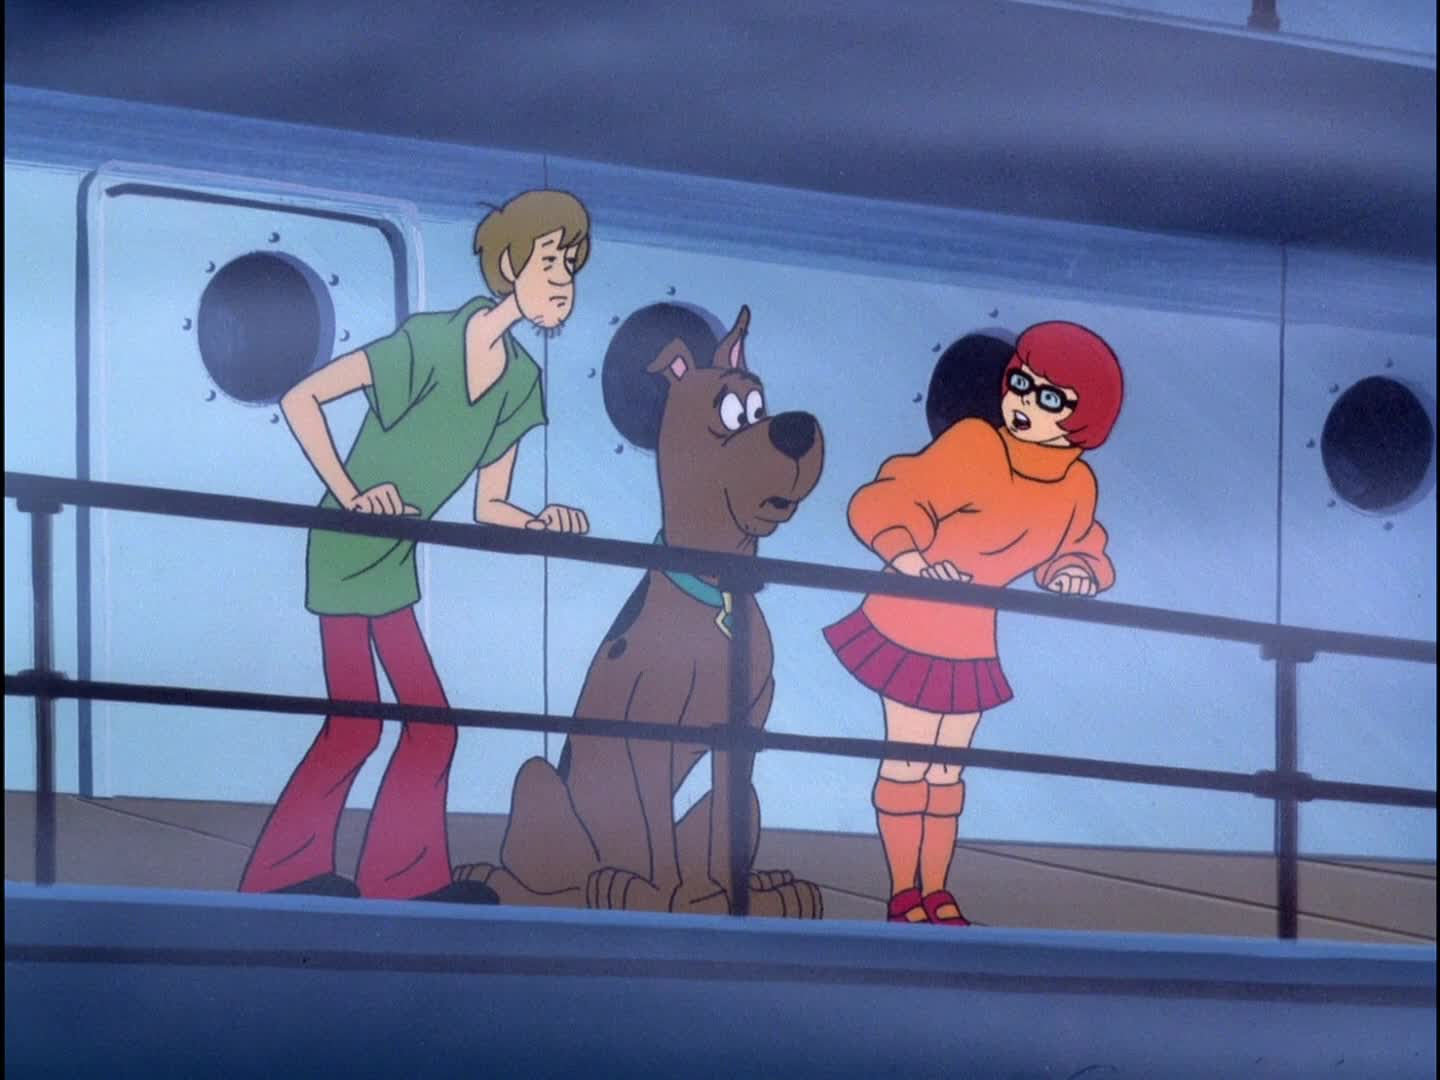 The scooby doo show. Скуби Ду шоу 1976. The Scooby-Doo show / шоу Скуби-Ду (1976-1978).